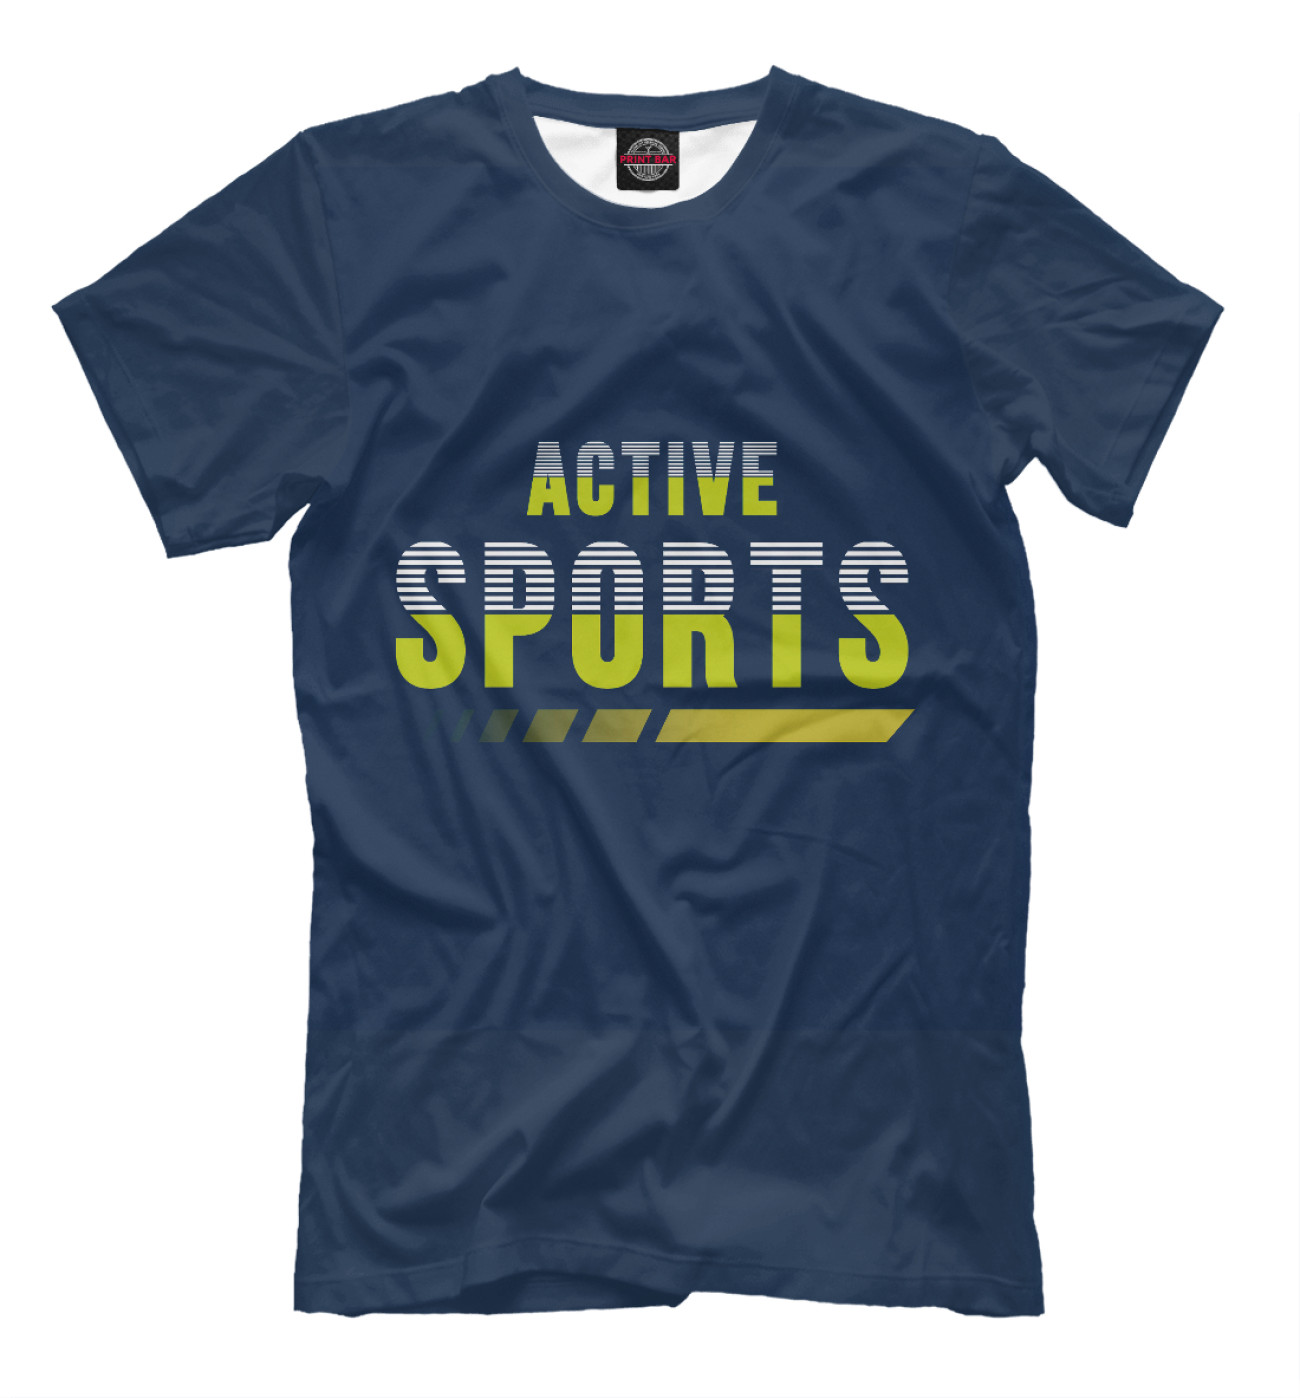 Мужская Футболка Active Sports, артикул: SRZ-171698-fut-2